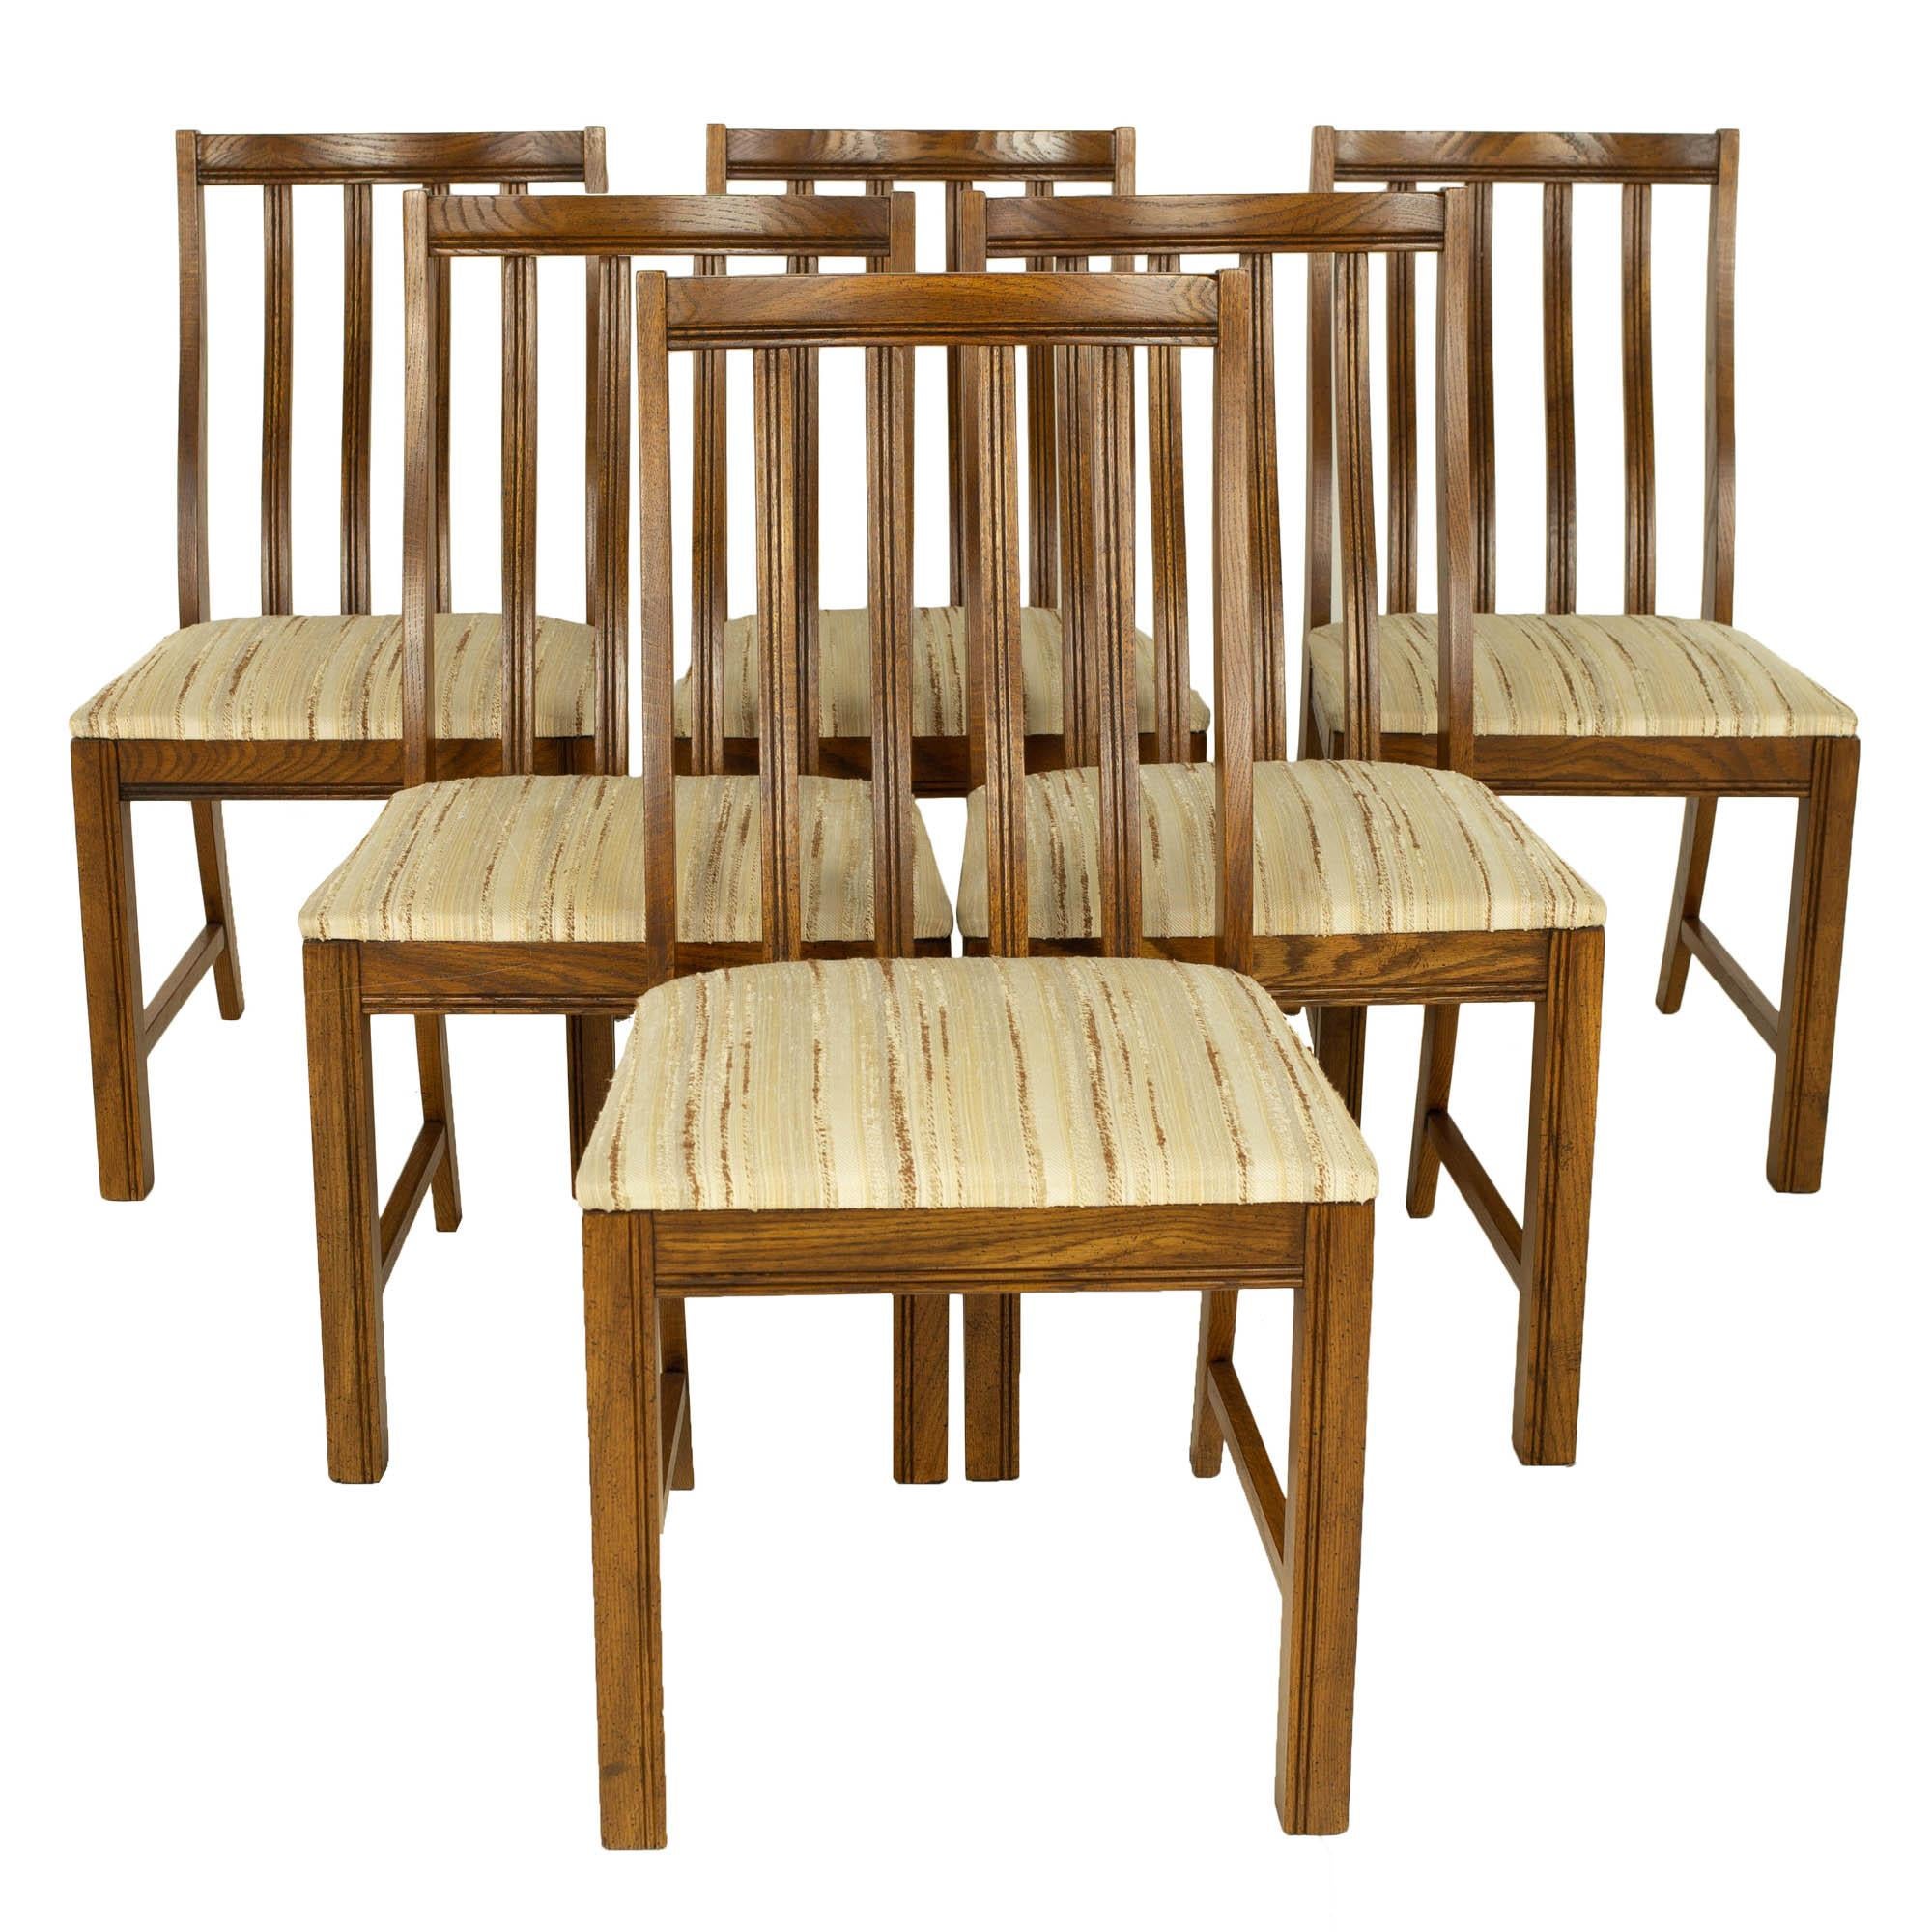 Lane First Edition Style Keller chaises de salle à manger en noyer du milieu du siècle - Lot de 6

Chaque chaise mesure : 16 de large x 20 de profond x 34,5 de haut, avec une hauteur d'assise et un dégagement de 18,5 pouces

tous les meubles